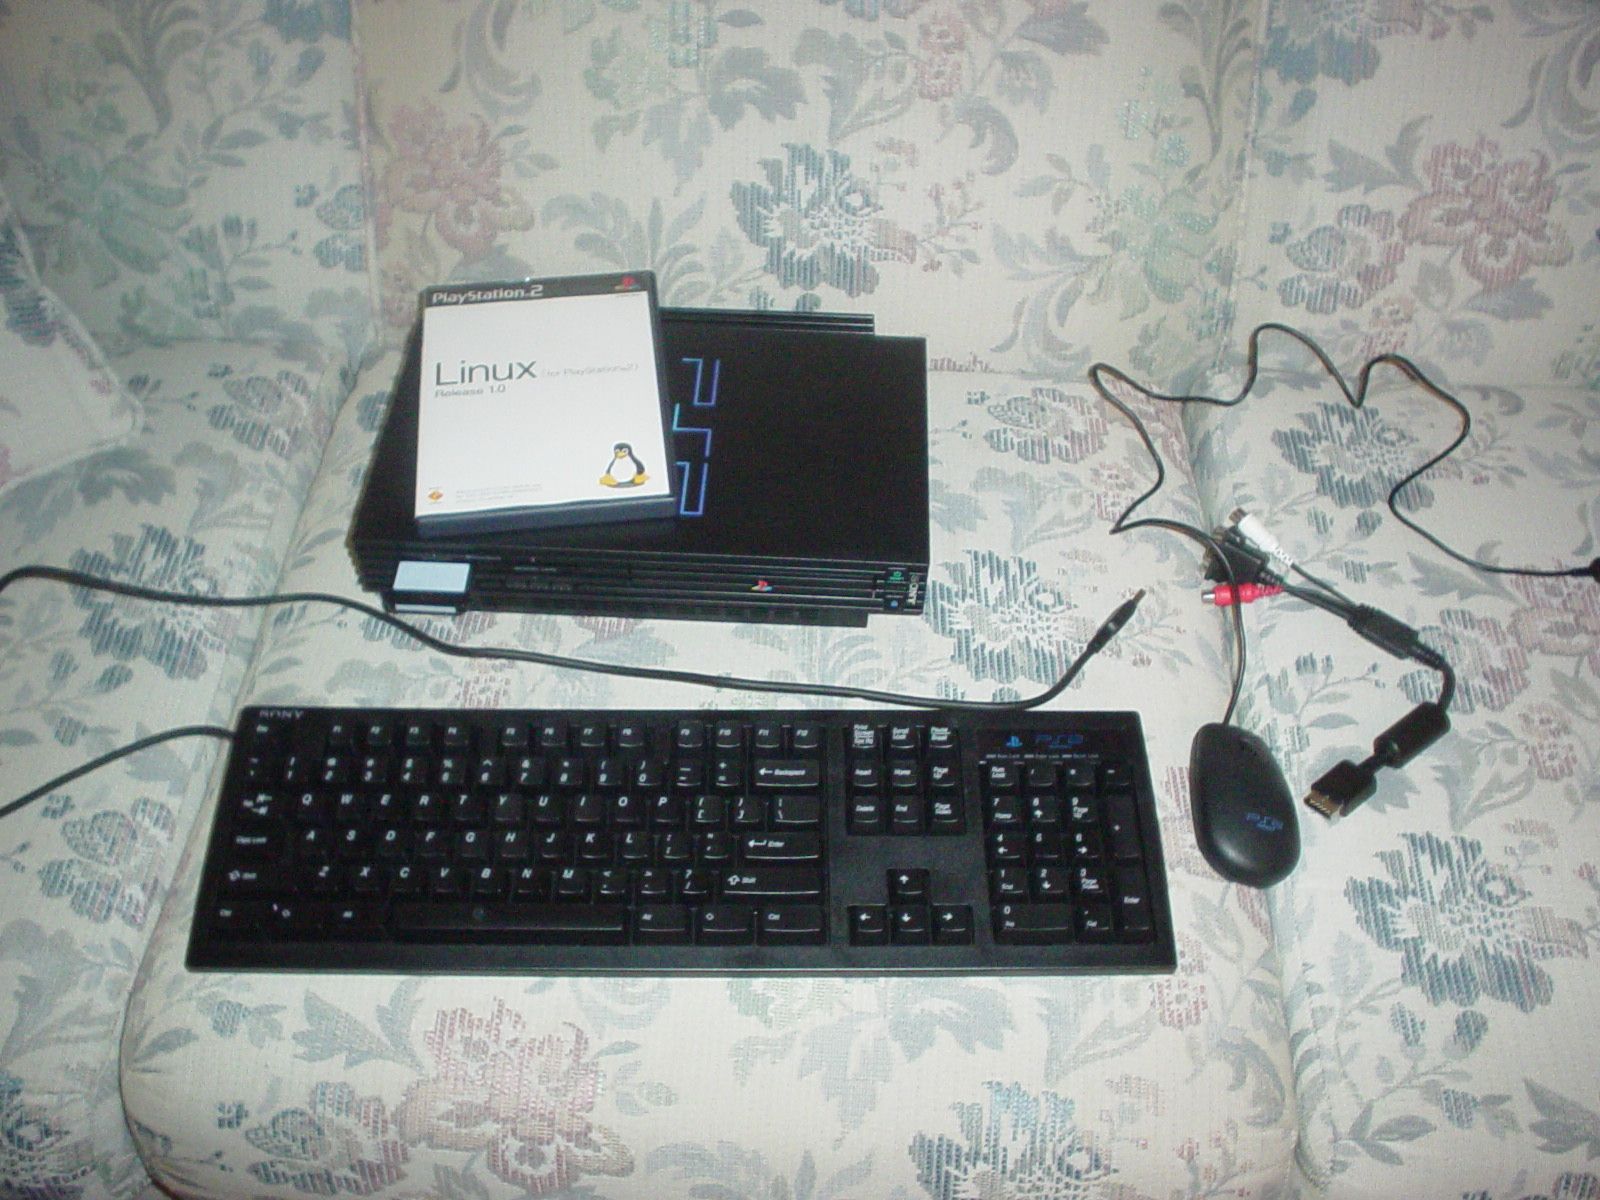 PlayStation 2 configurado como um computador usando o kit Linux.